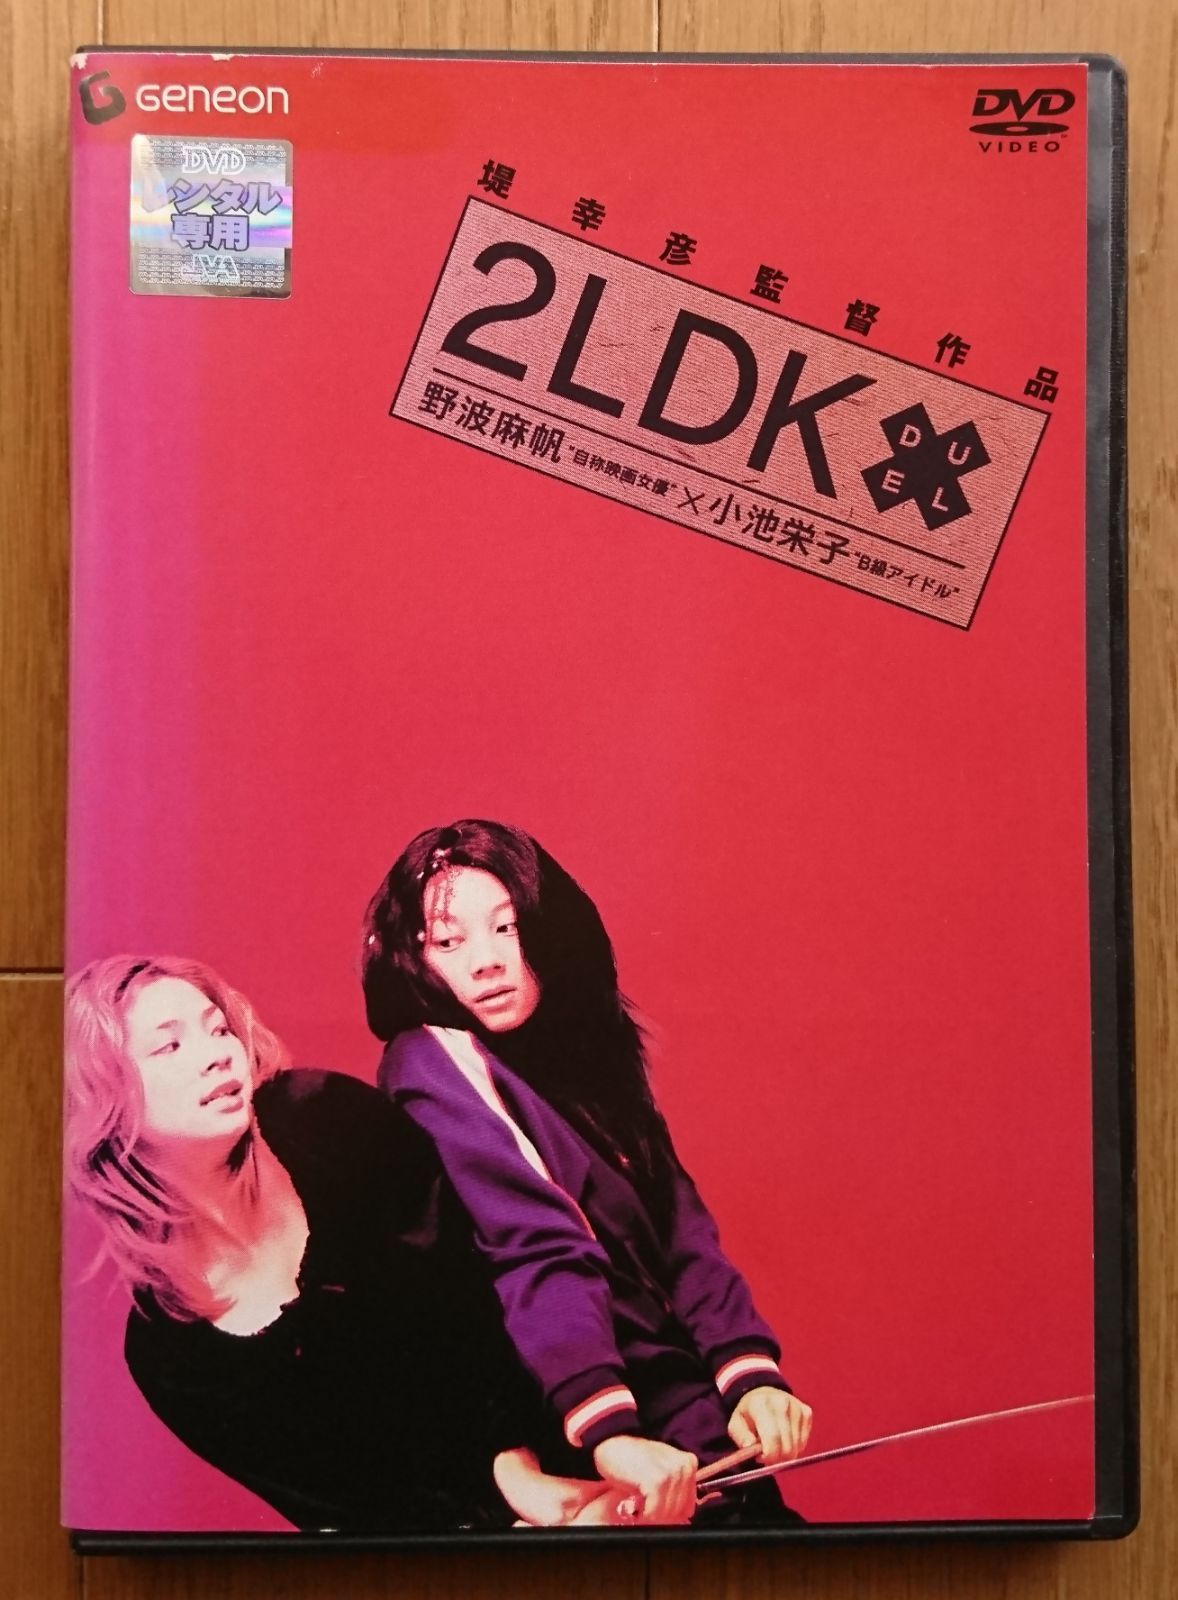 【レンタル版DVD】2LDK 野波麻帆/小池栄子 監督:堤幸彦 ※ジャケ傷みあり